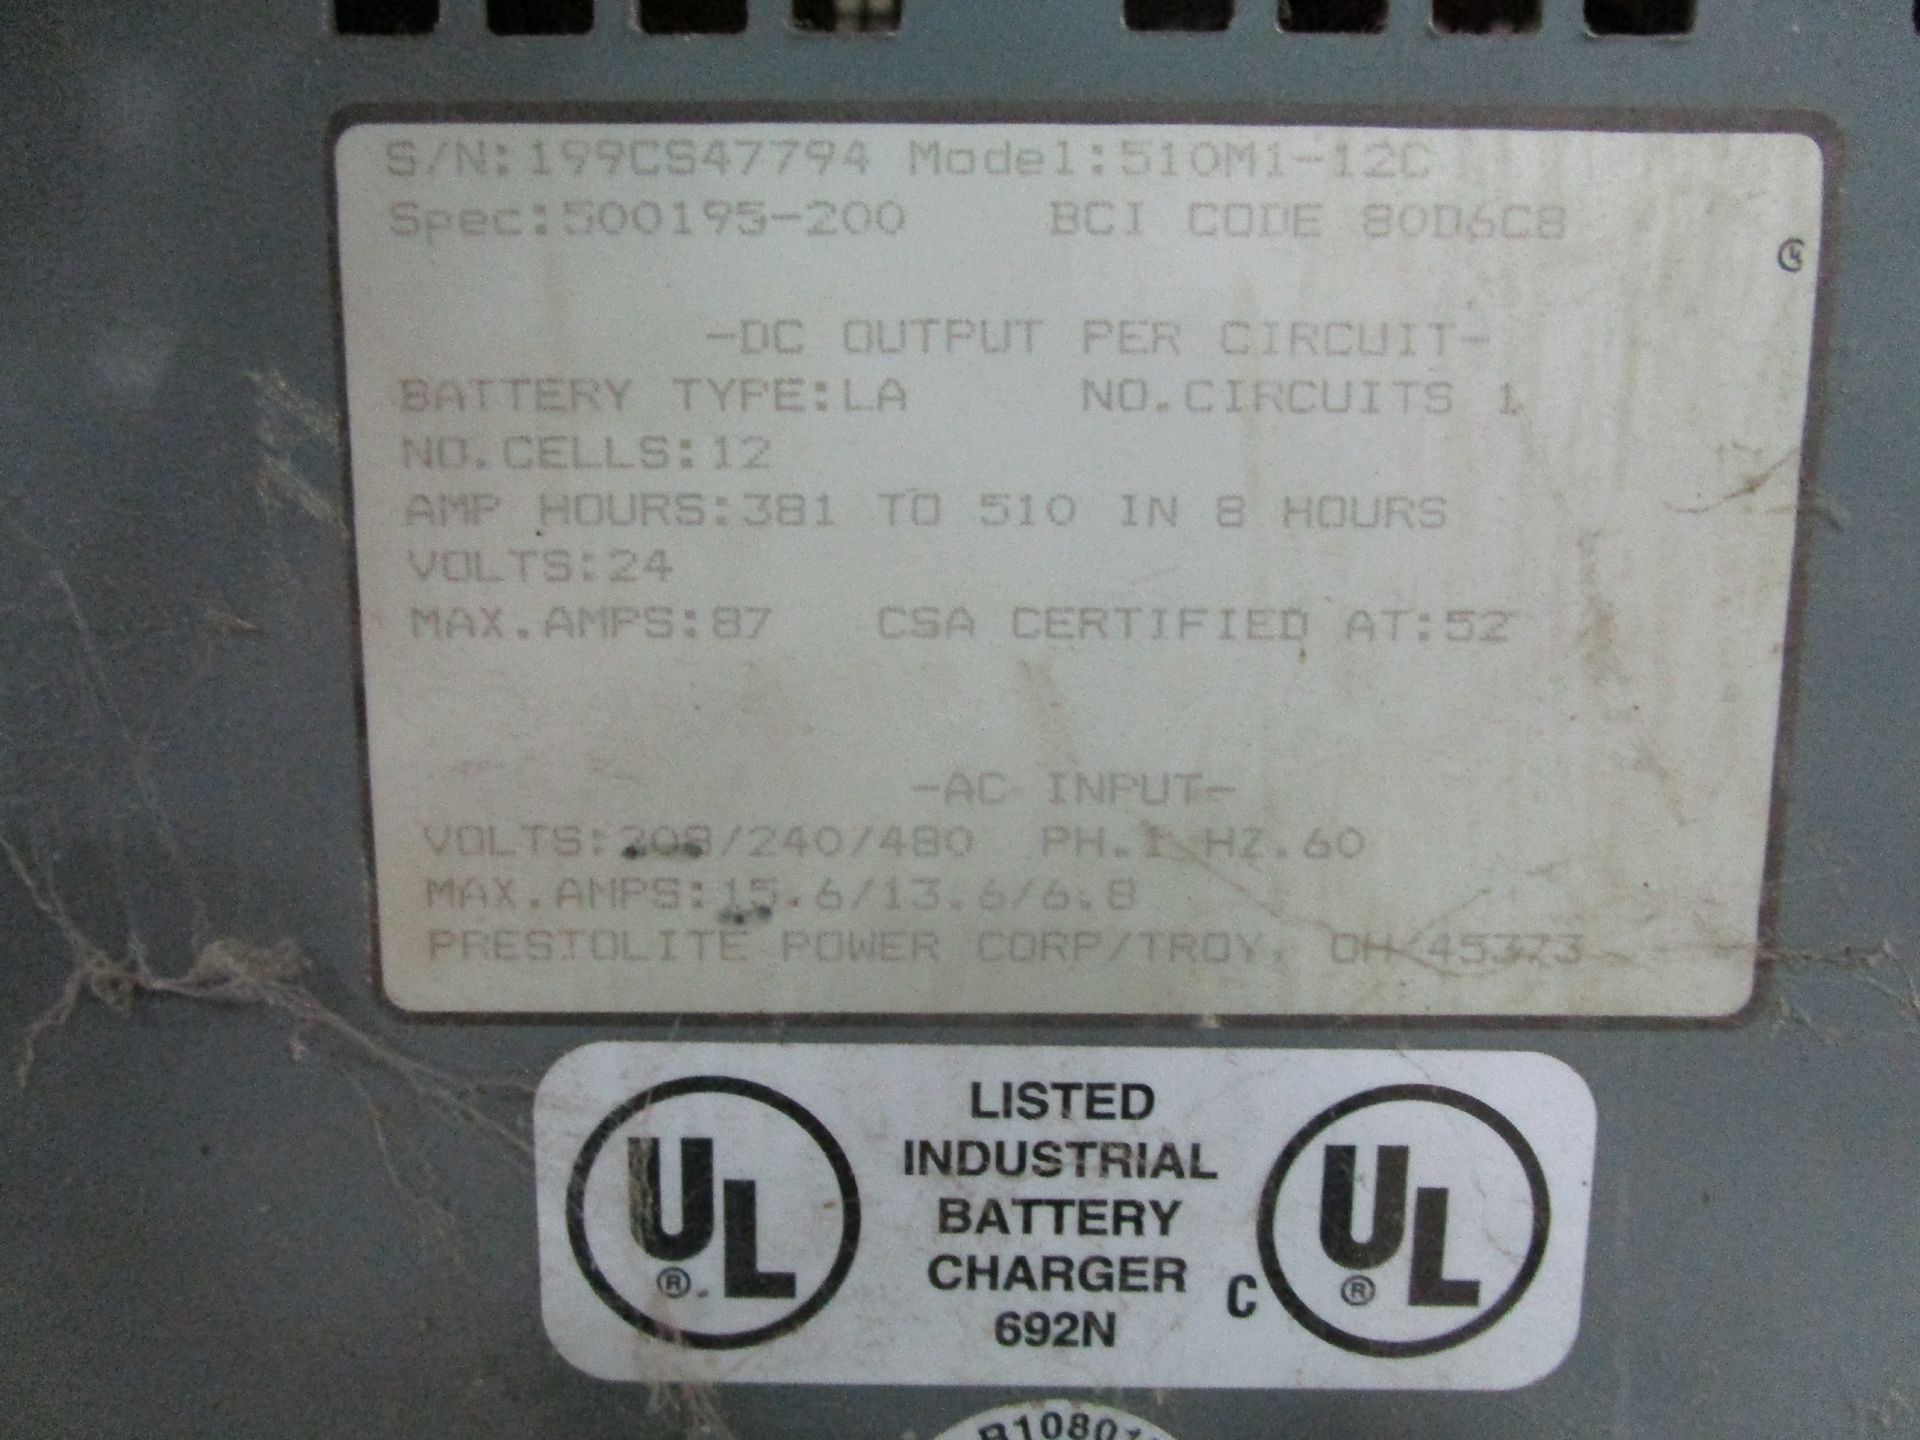 Hobart 510MI-12C 24-Volt Battery Charger - Image 3 of 3